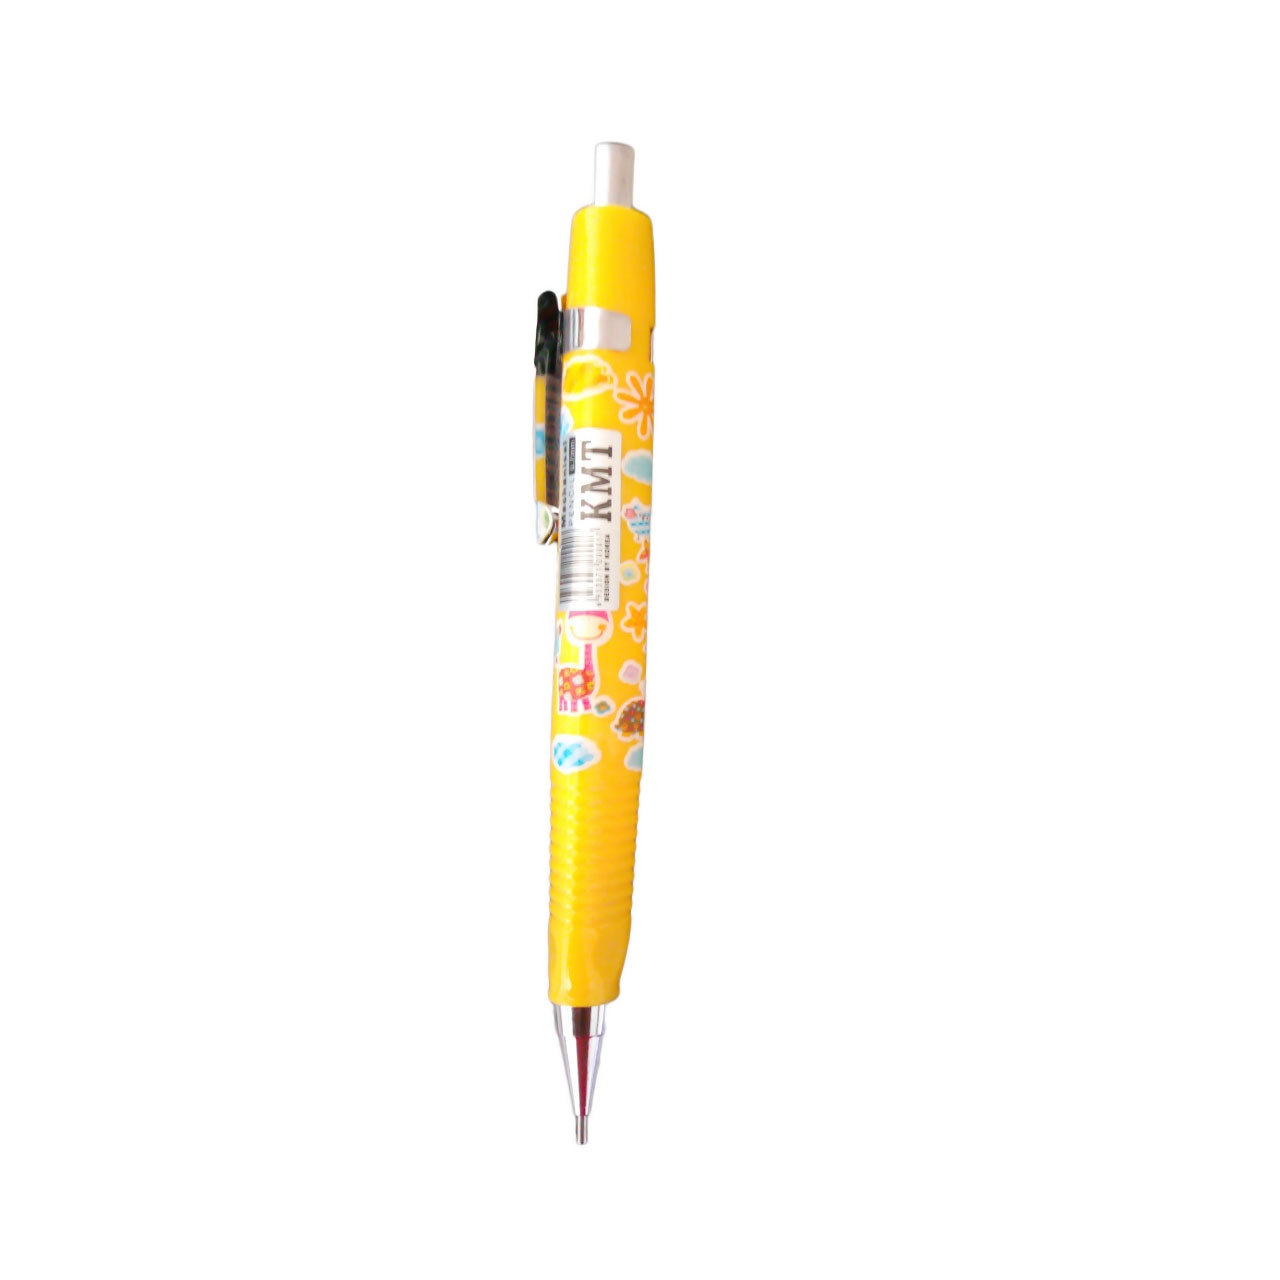 مداد نوکی 0.5 میلی متری کا ام تی کد 041